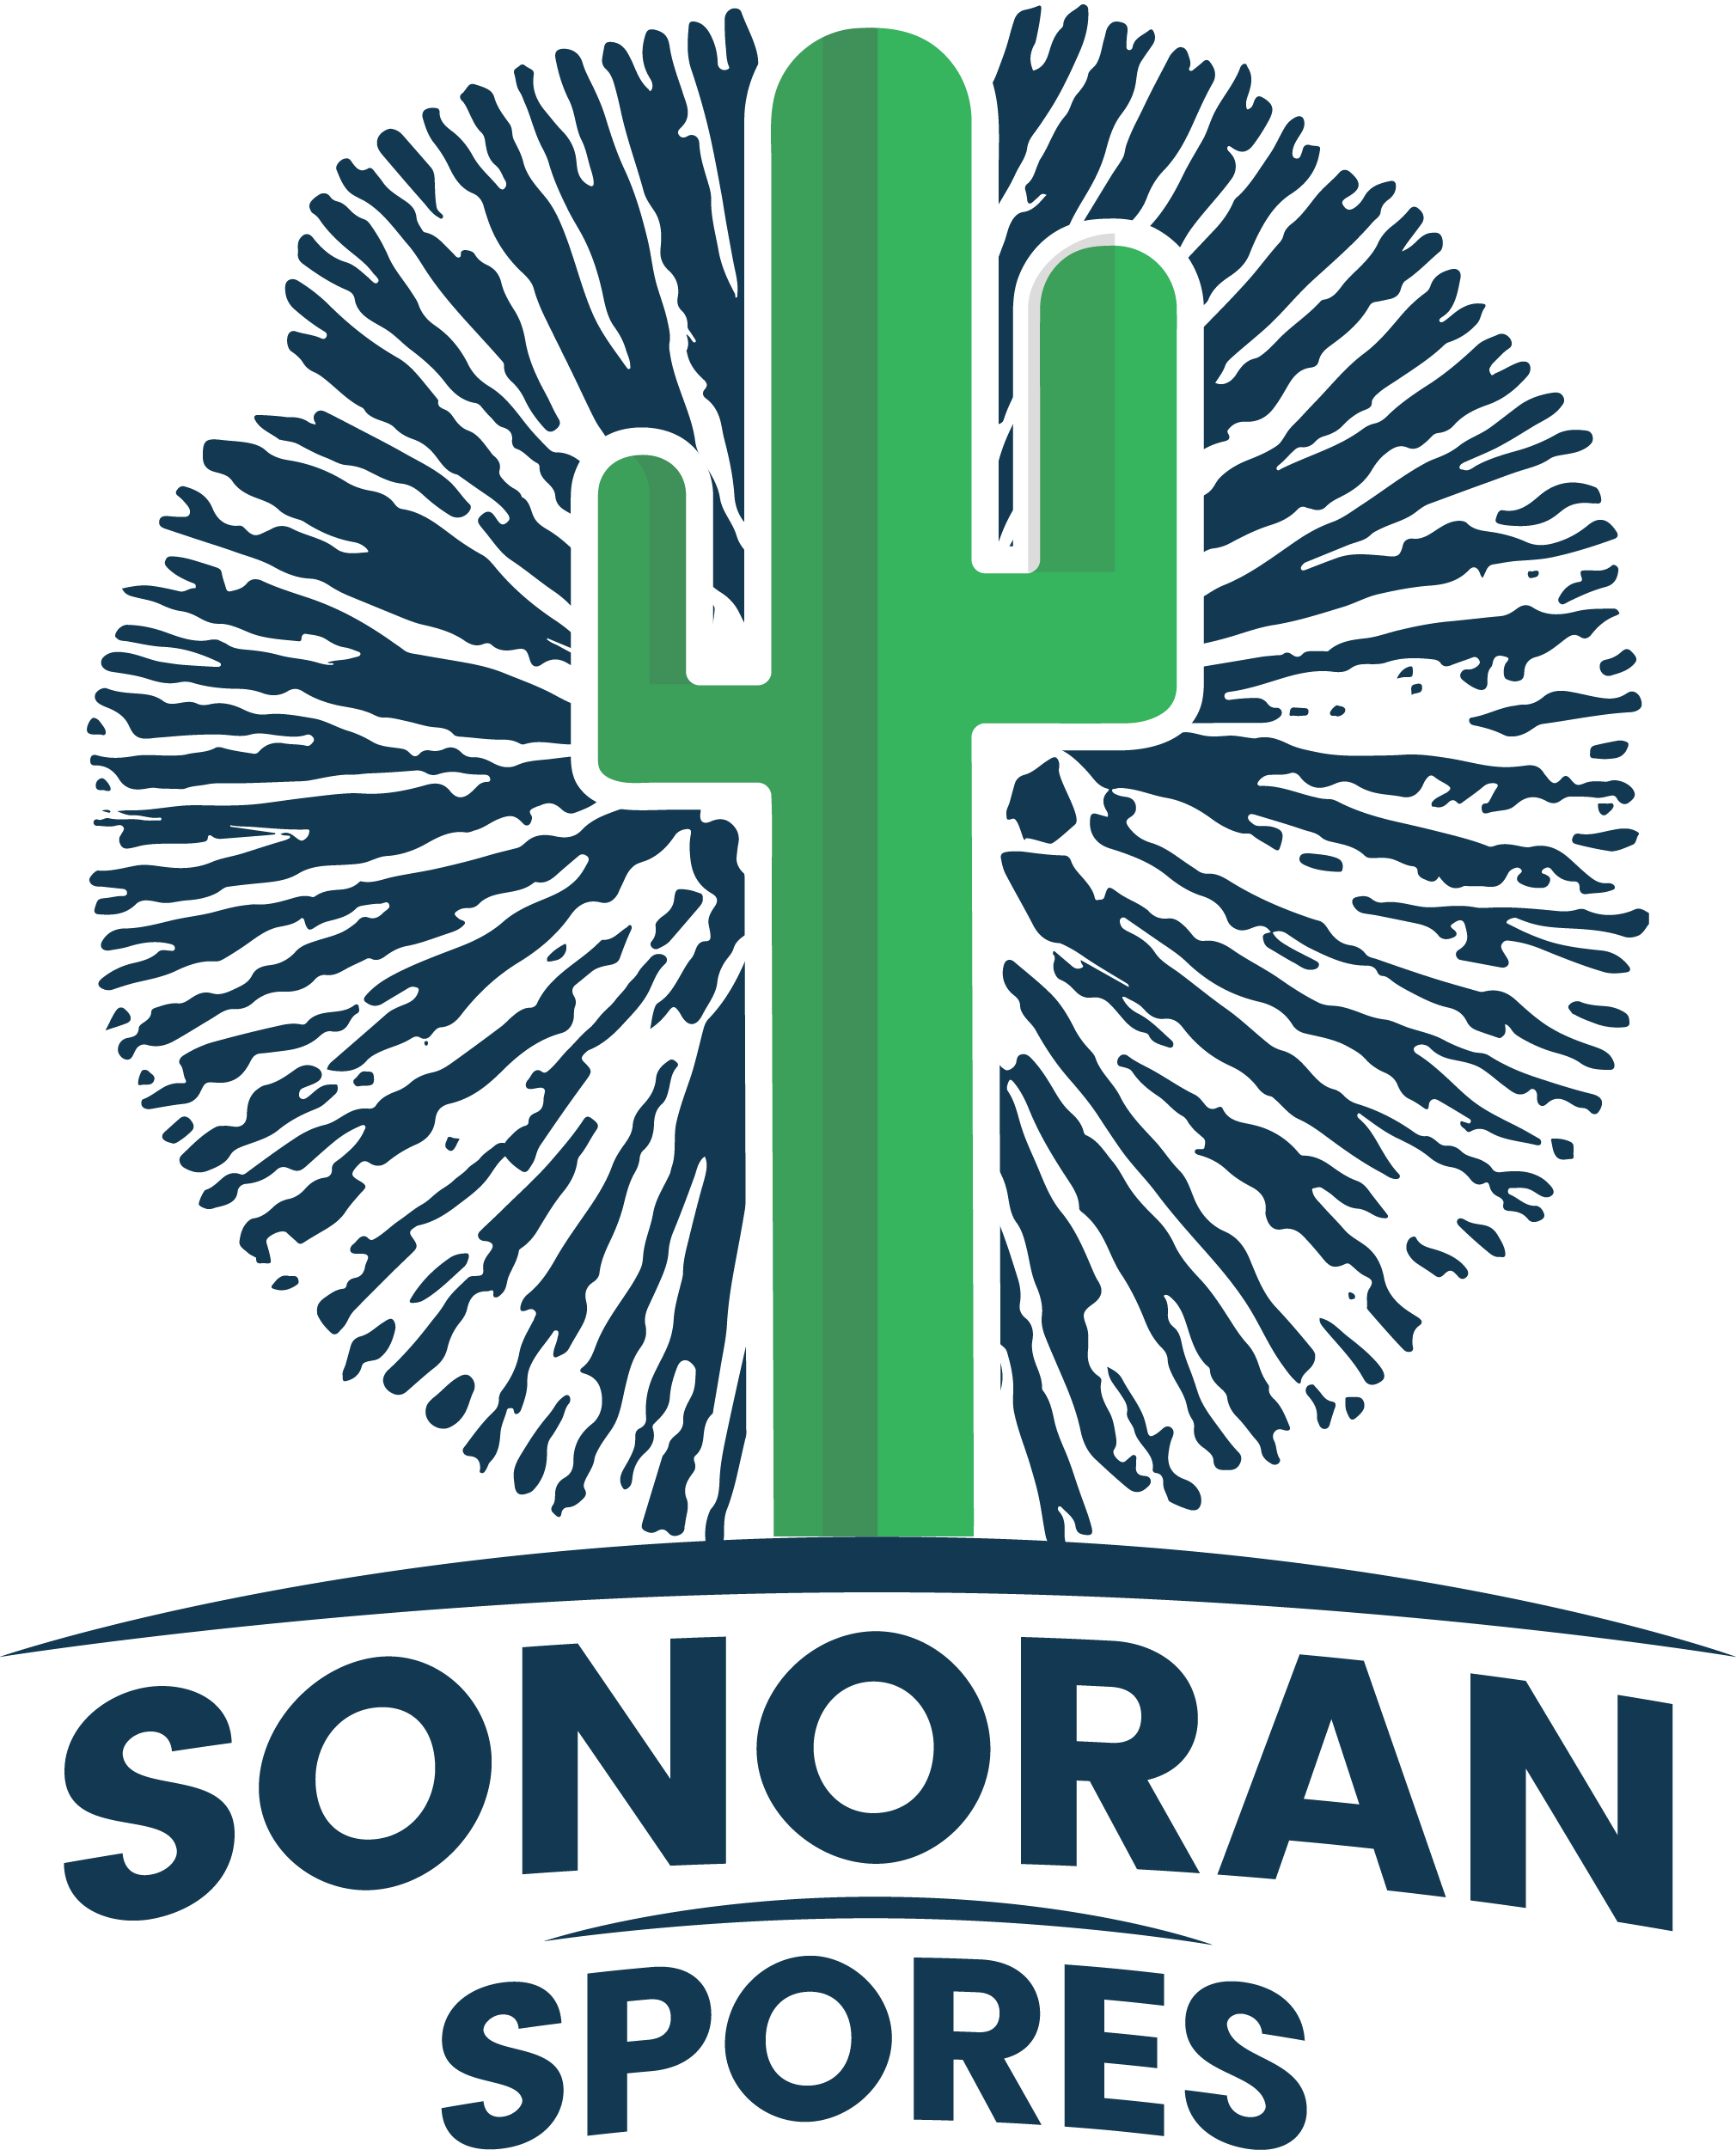 Sonoran Spores logo